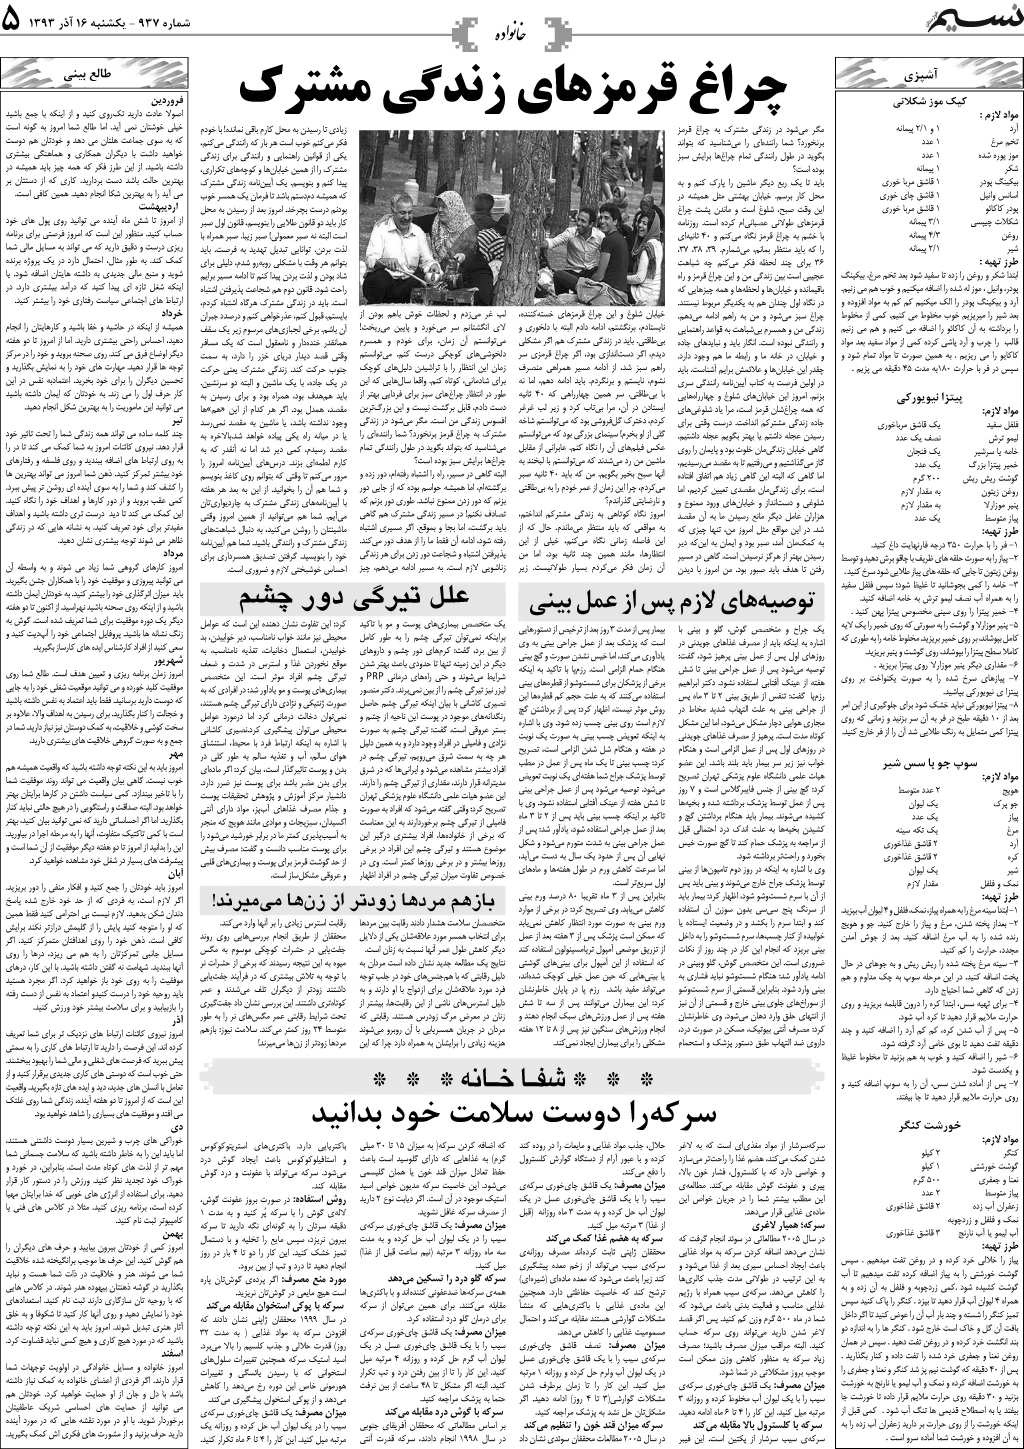 صفحه خانواده روزنامه نسیم شماره 937